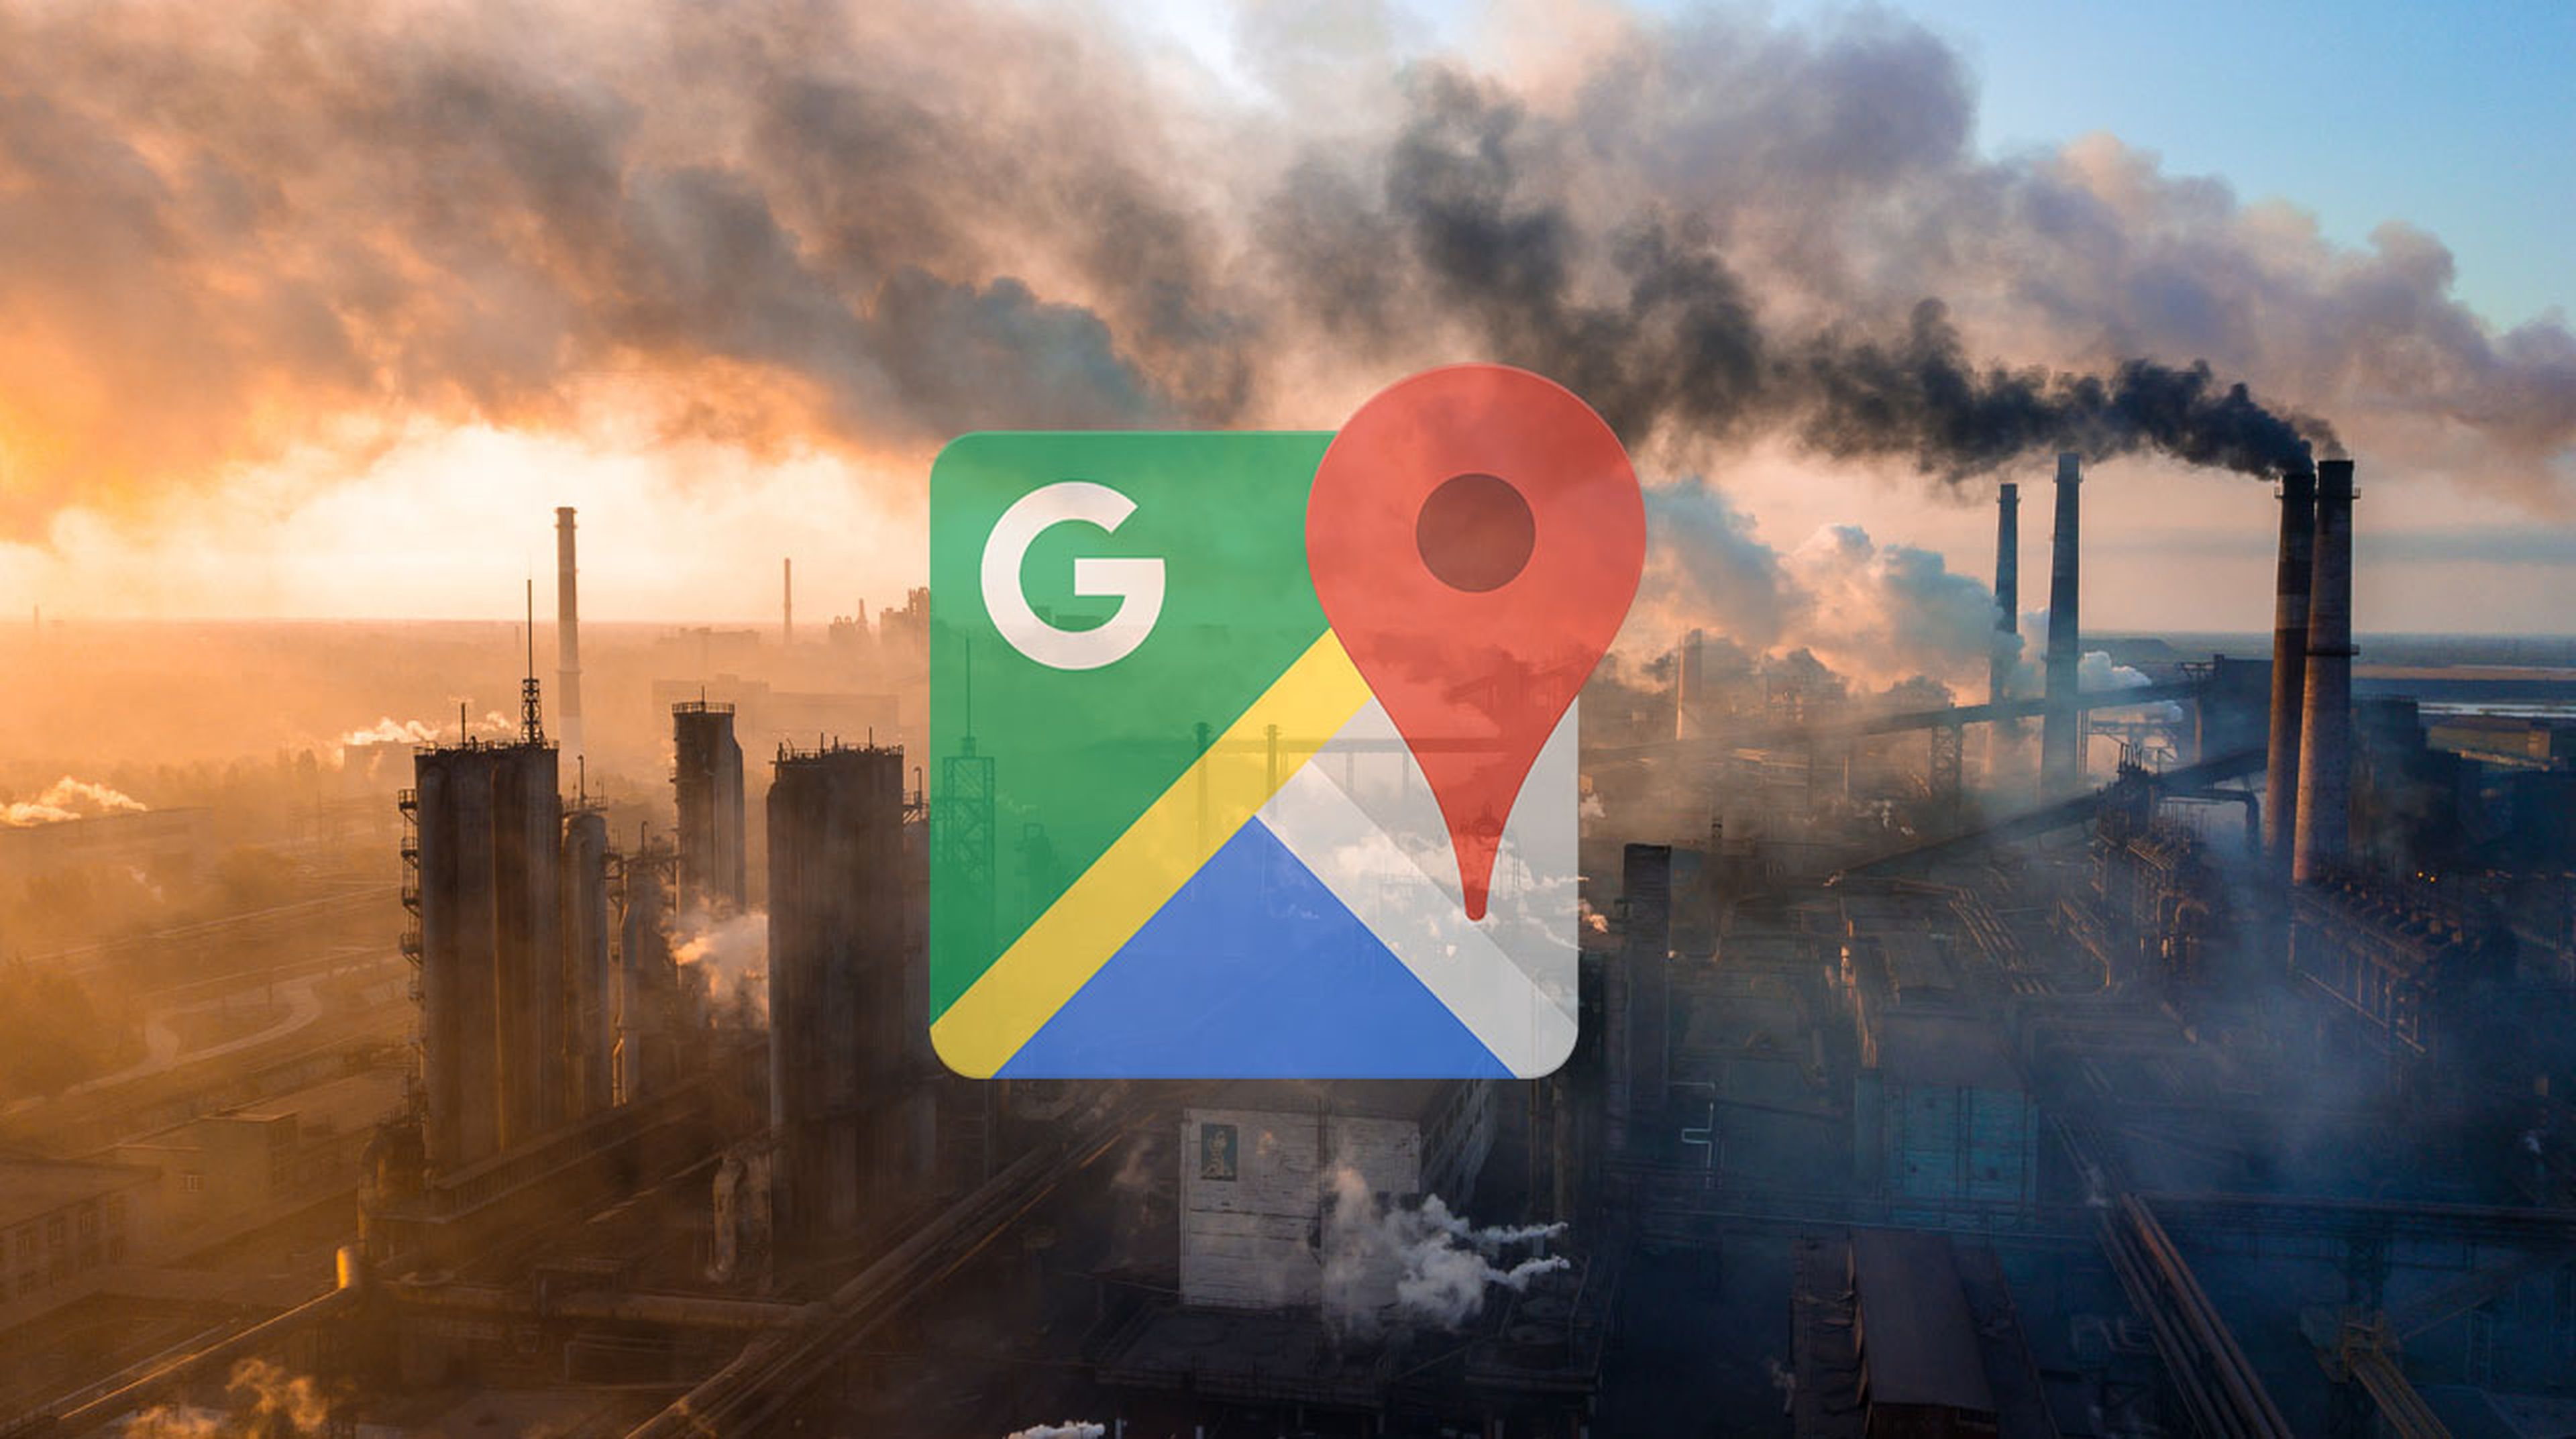 Google Maps muestra ahora los datos del índice de calidad del aire en Android e iOS